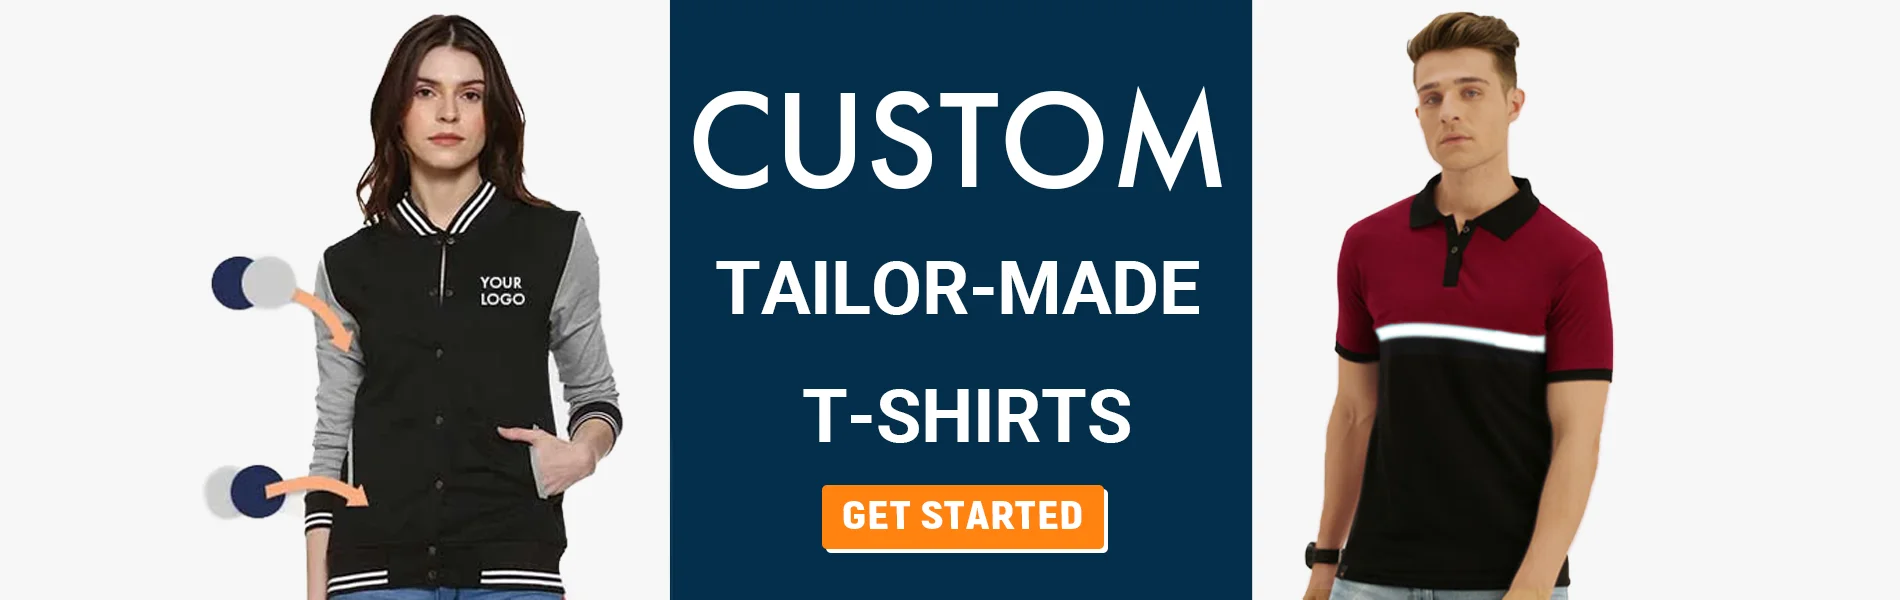 custom tailormade t-shirts raipur